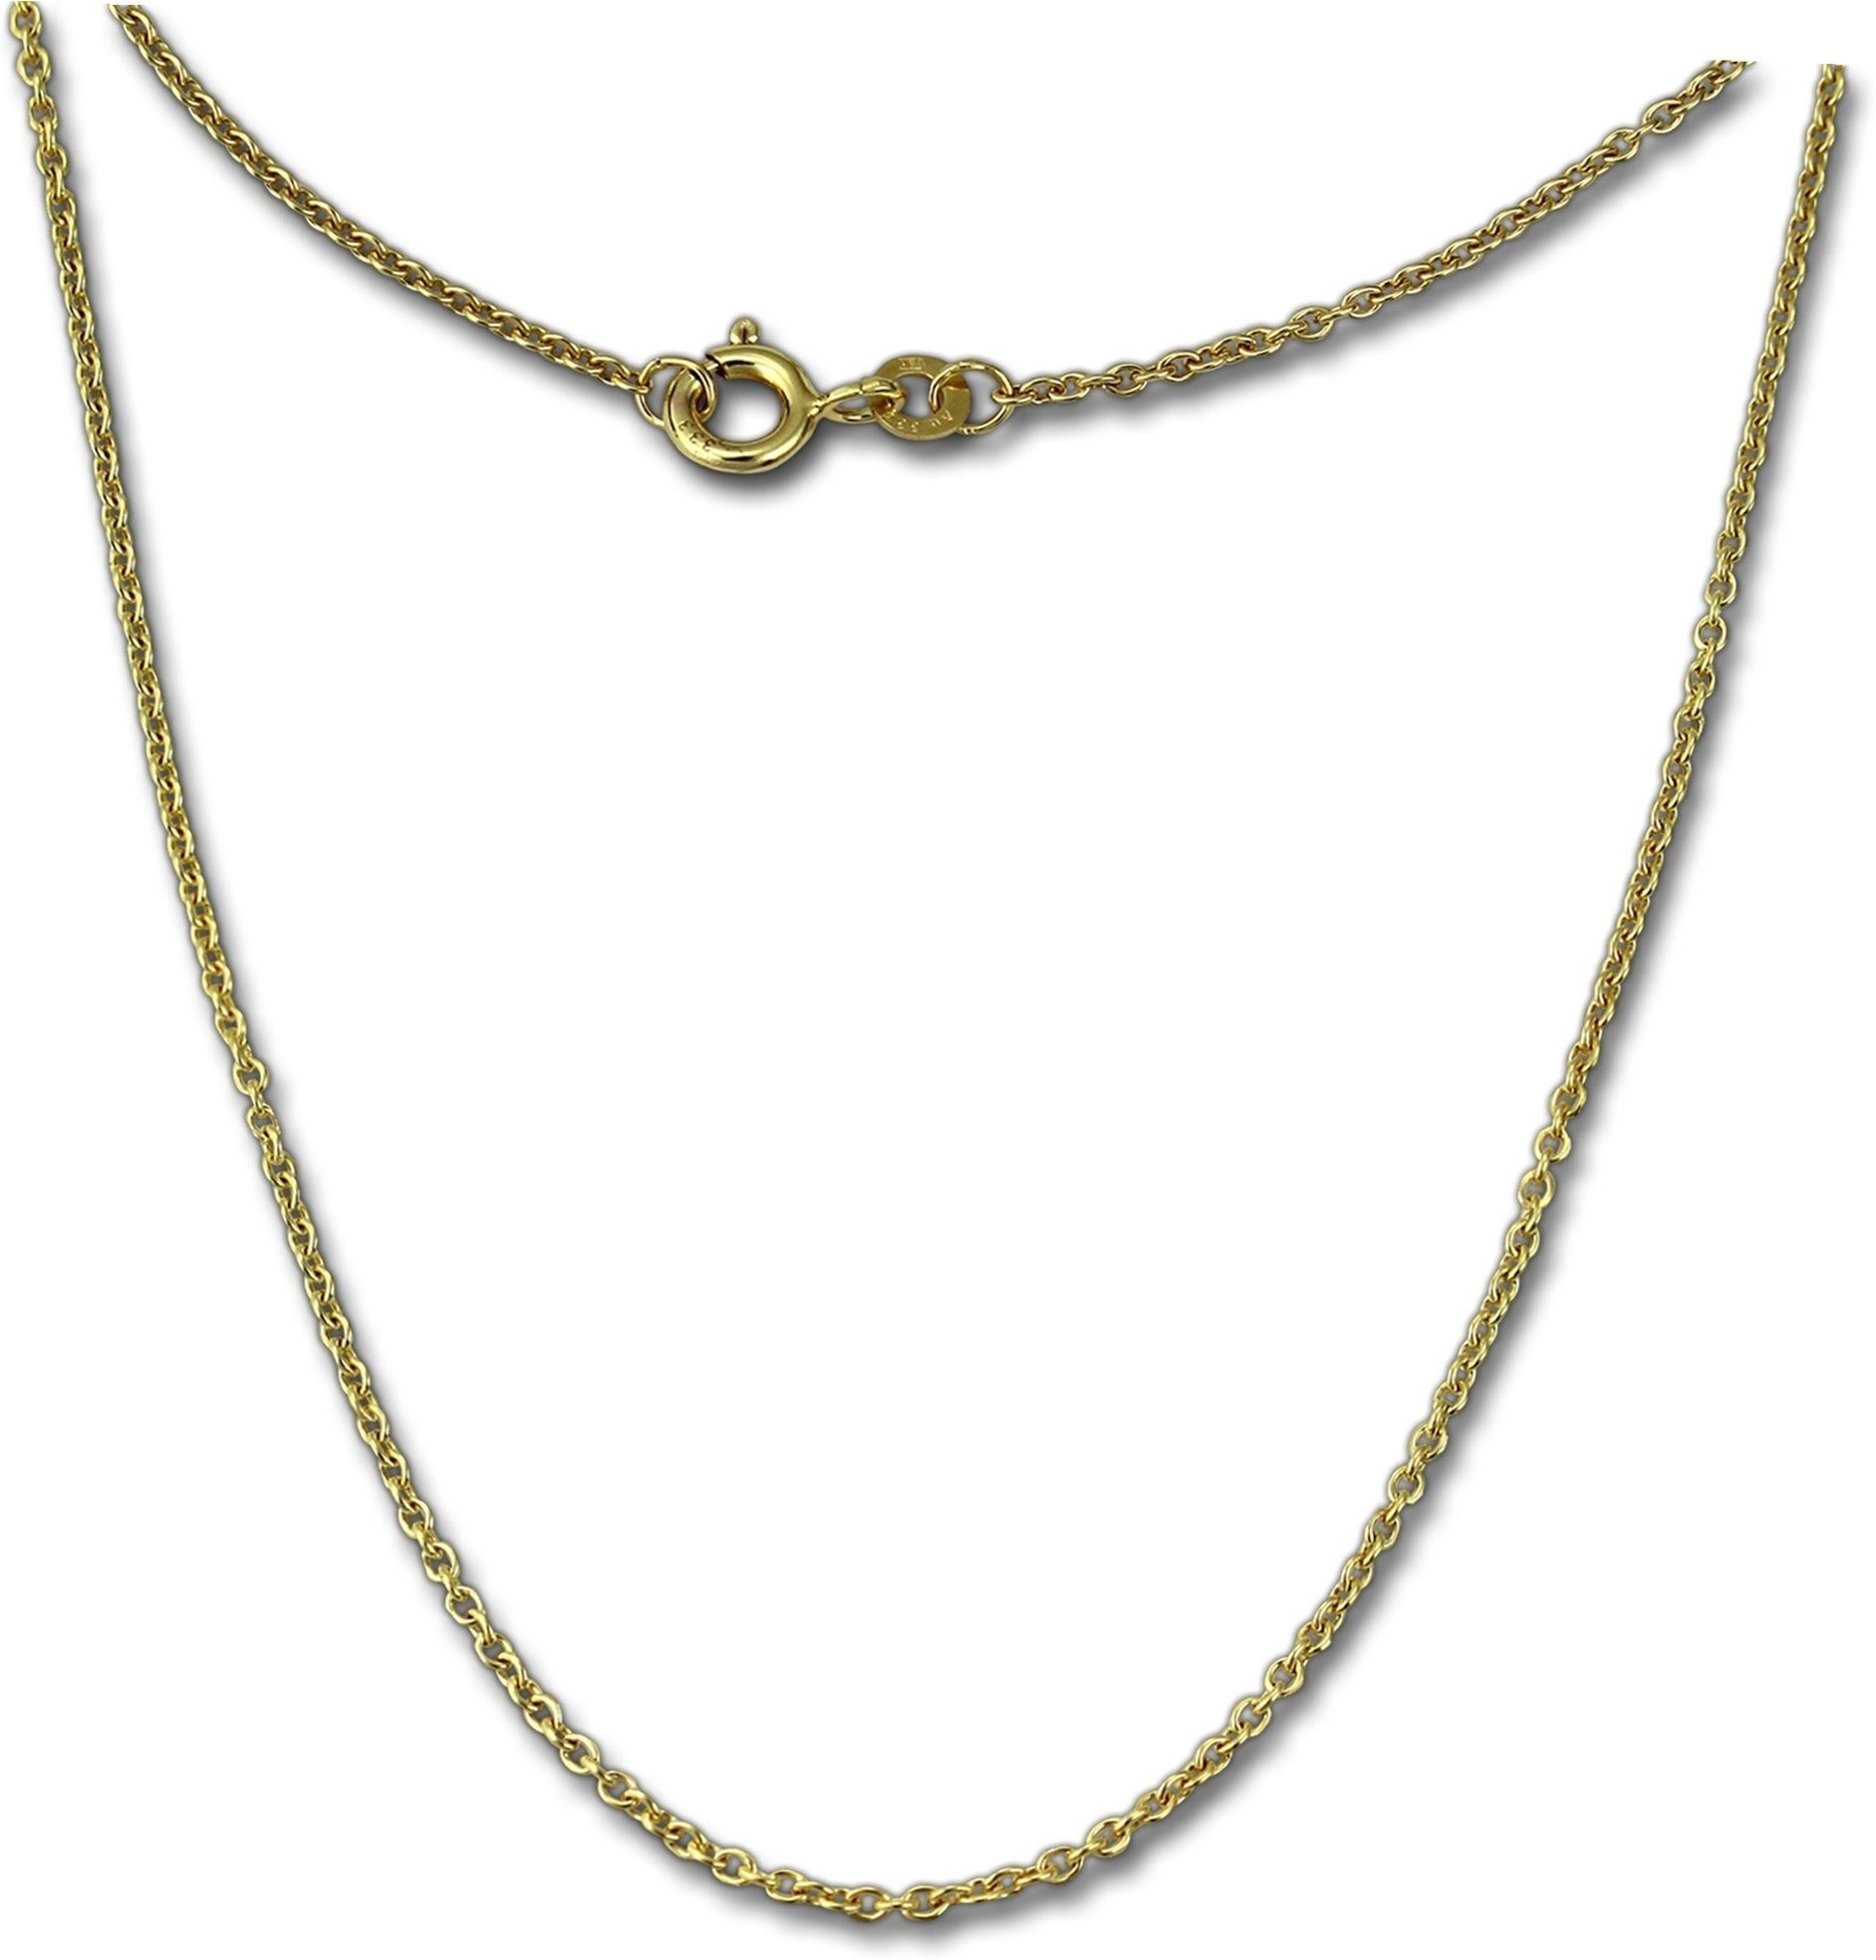 GoldDream Goldkette GoldDream Collier Halskette 333Gold (Collier), Damen Colliers Halskette 36cm, 333 Gelbgold - 8 Karat Echtgold, 333er